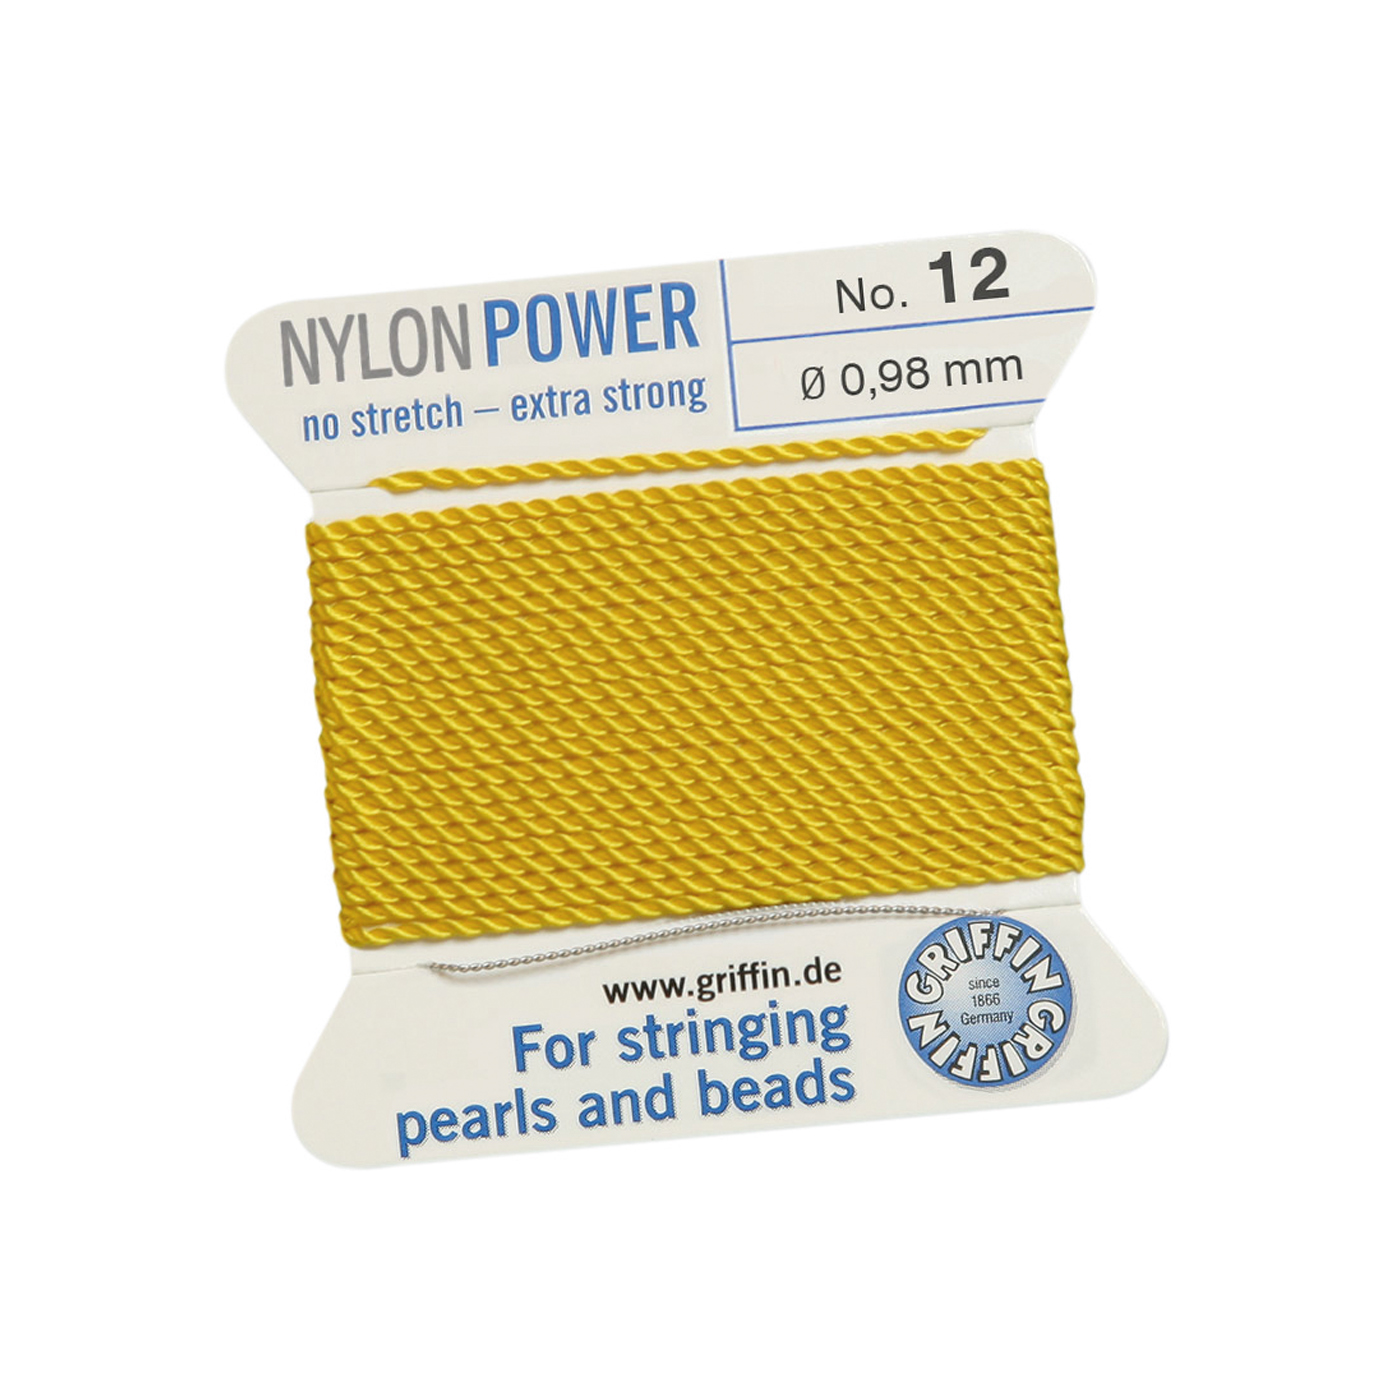 Bead Cord NylonPower, Light Yellow, No. 12 - 2 m